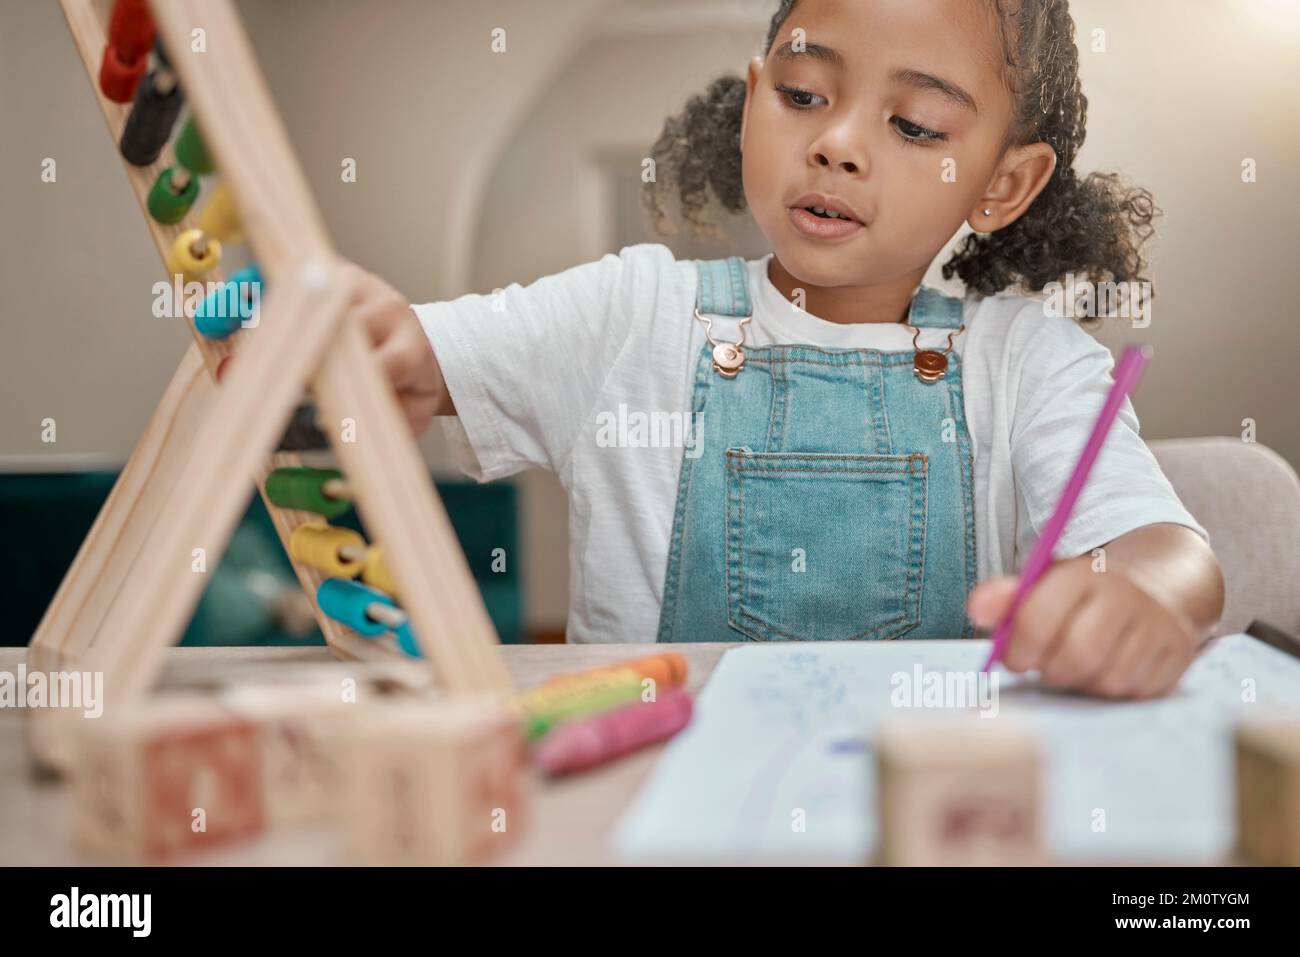 Apprentissage à domicile, éducation et fille avec maths abacus prêt pour le développement de la maternelle dans une maison. L'école, les connaissances d'étude et l'écriture test des nombres Banque D'Images